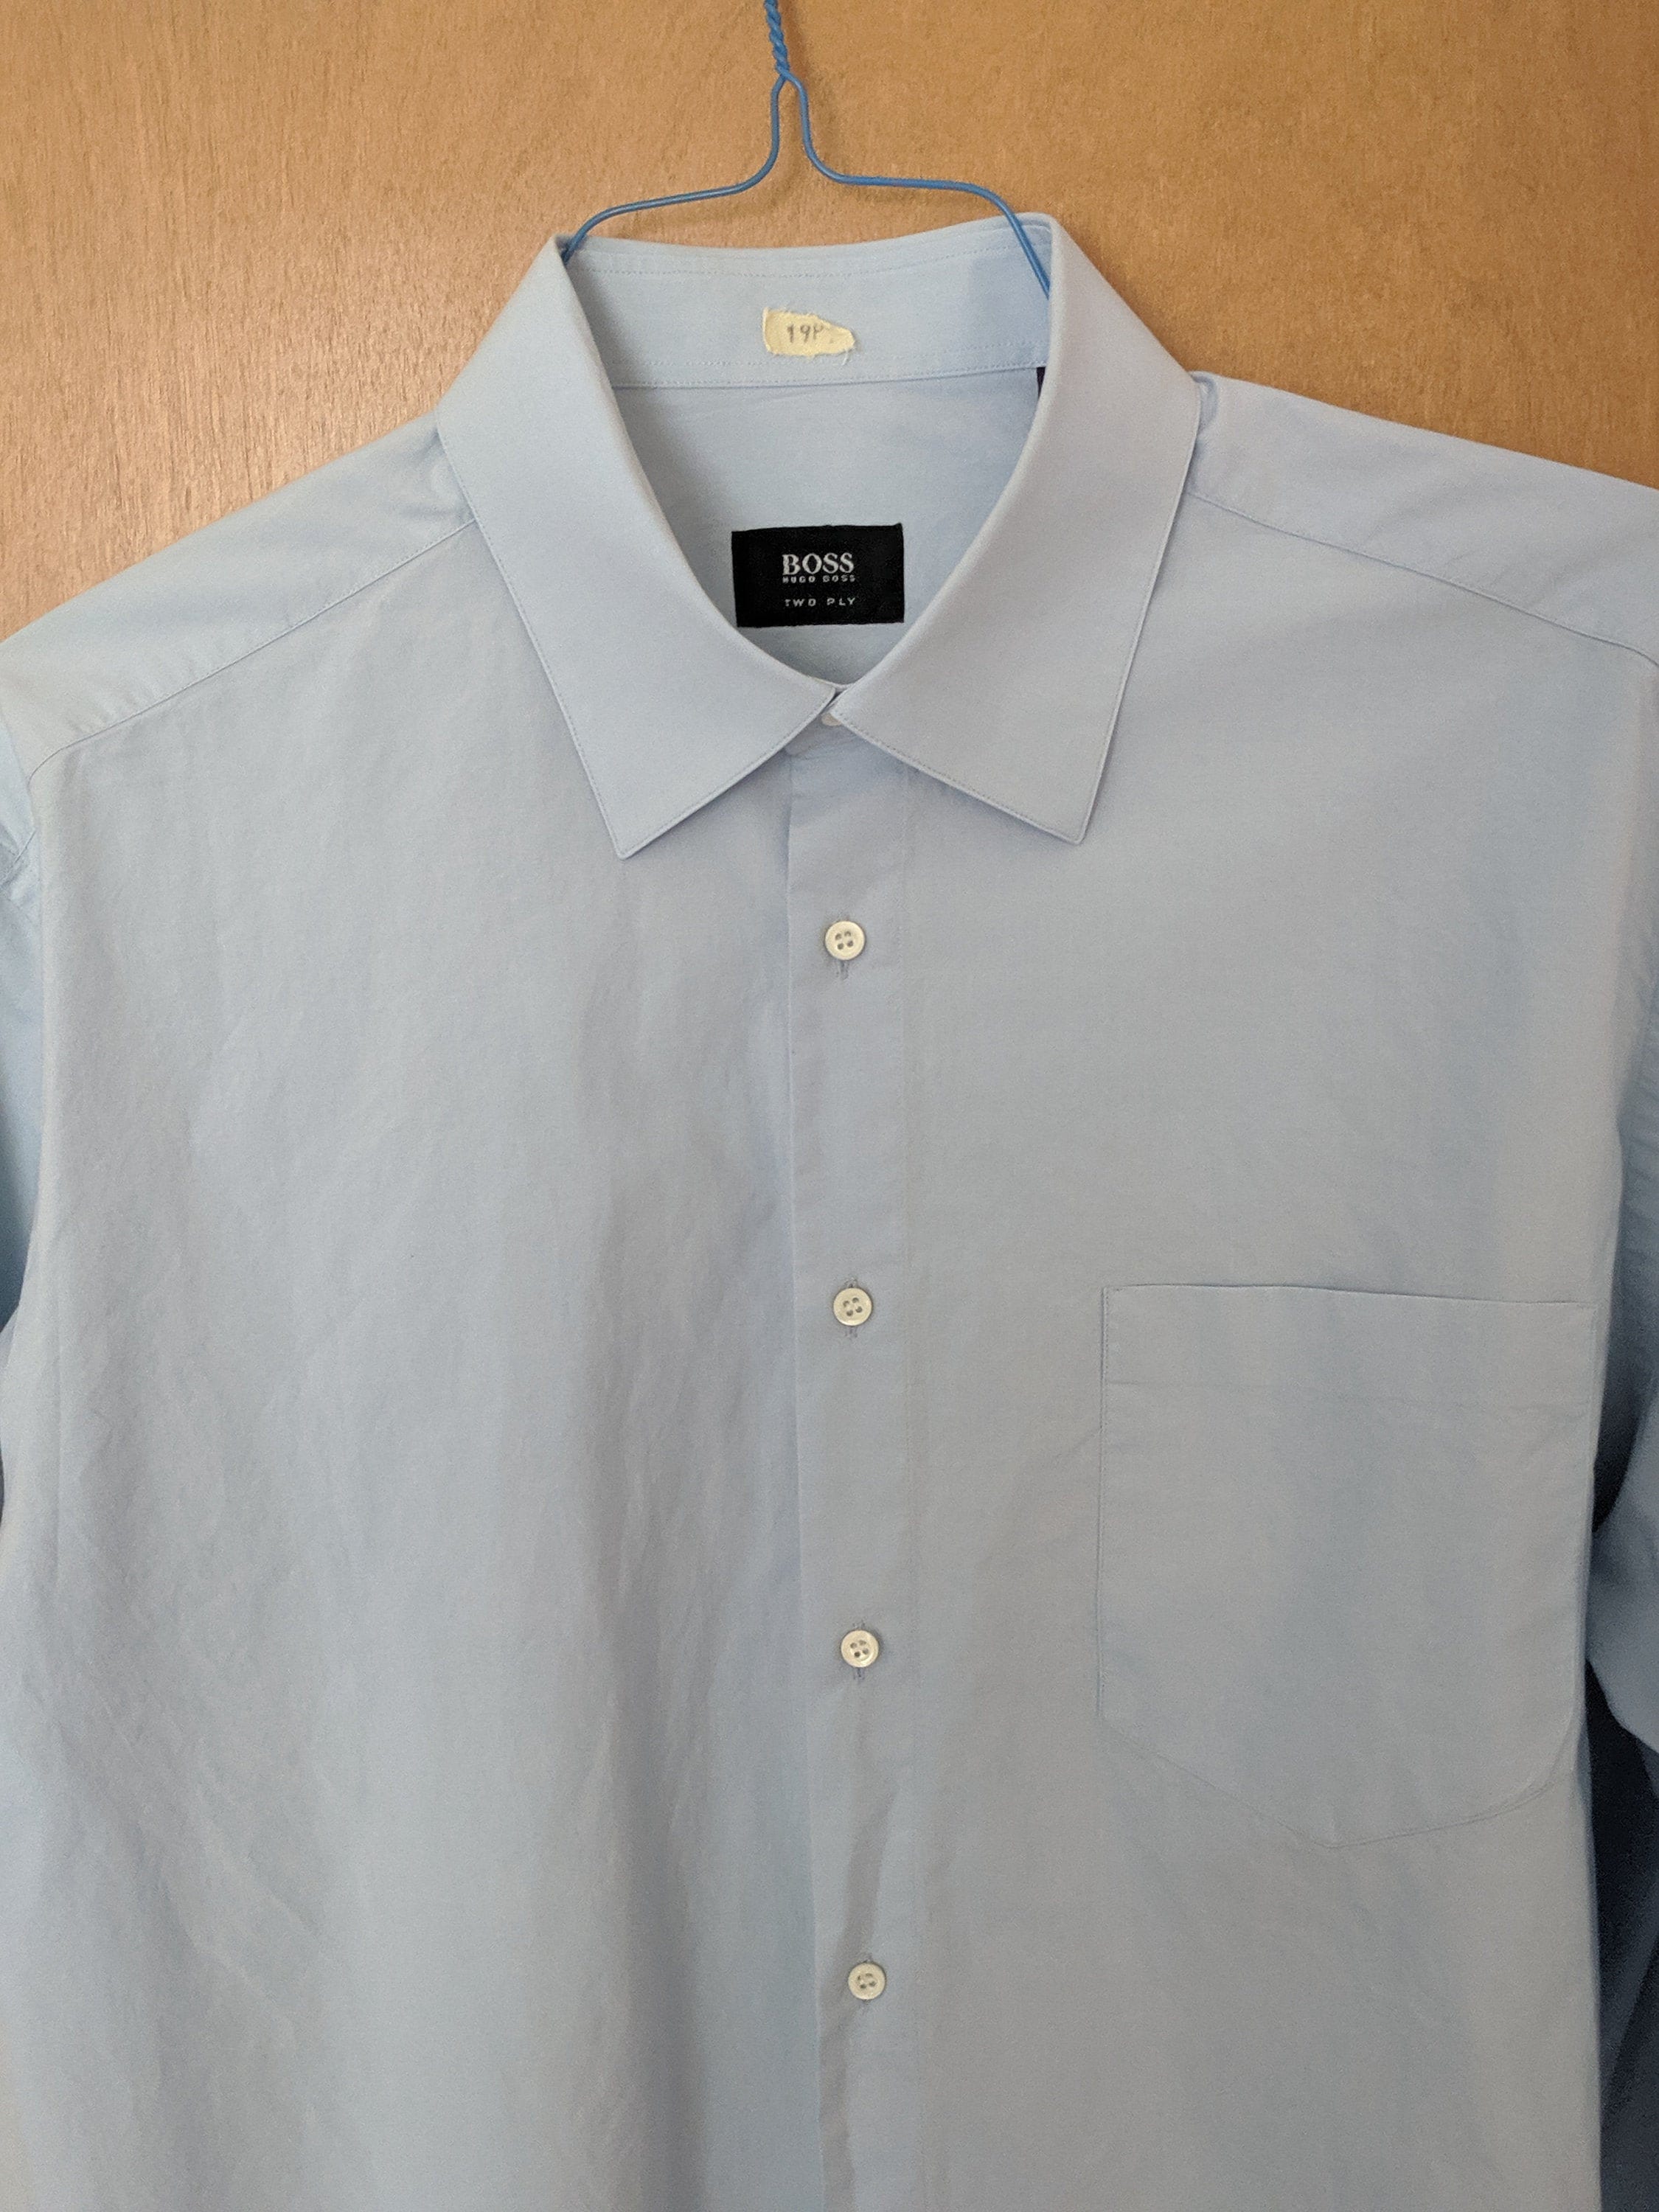 Hugo Boss Dress Shirt S 17 1/2 44 Blue - Etsy